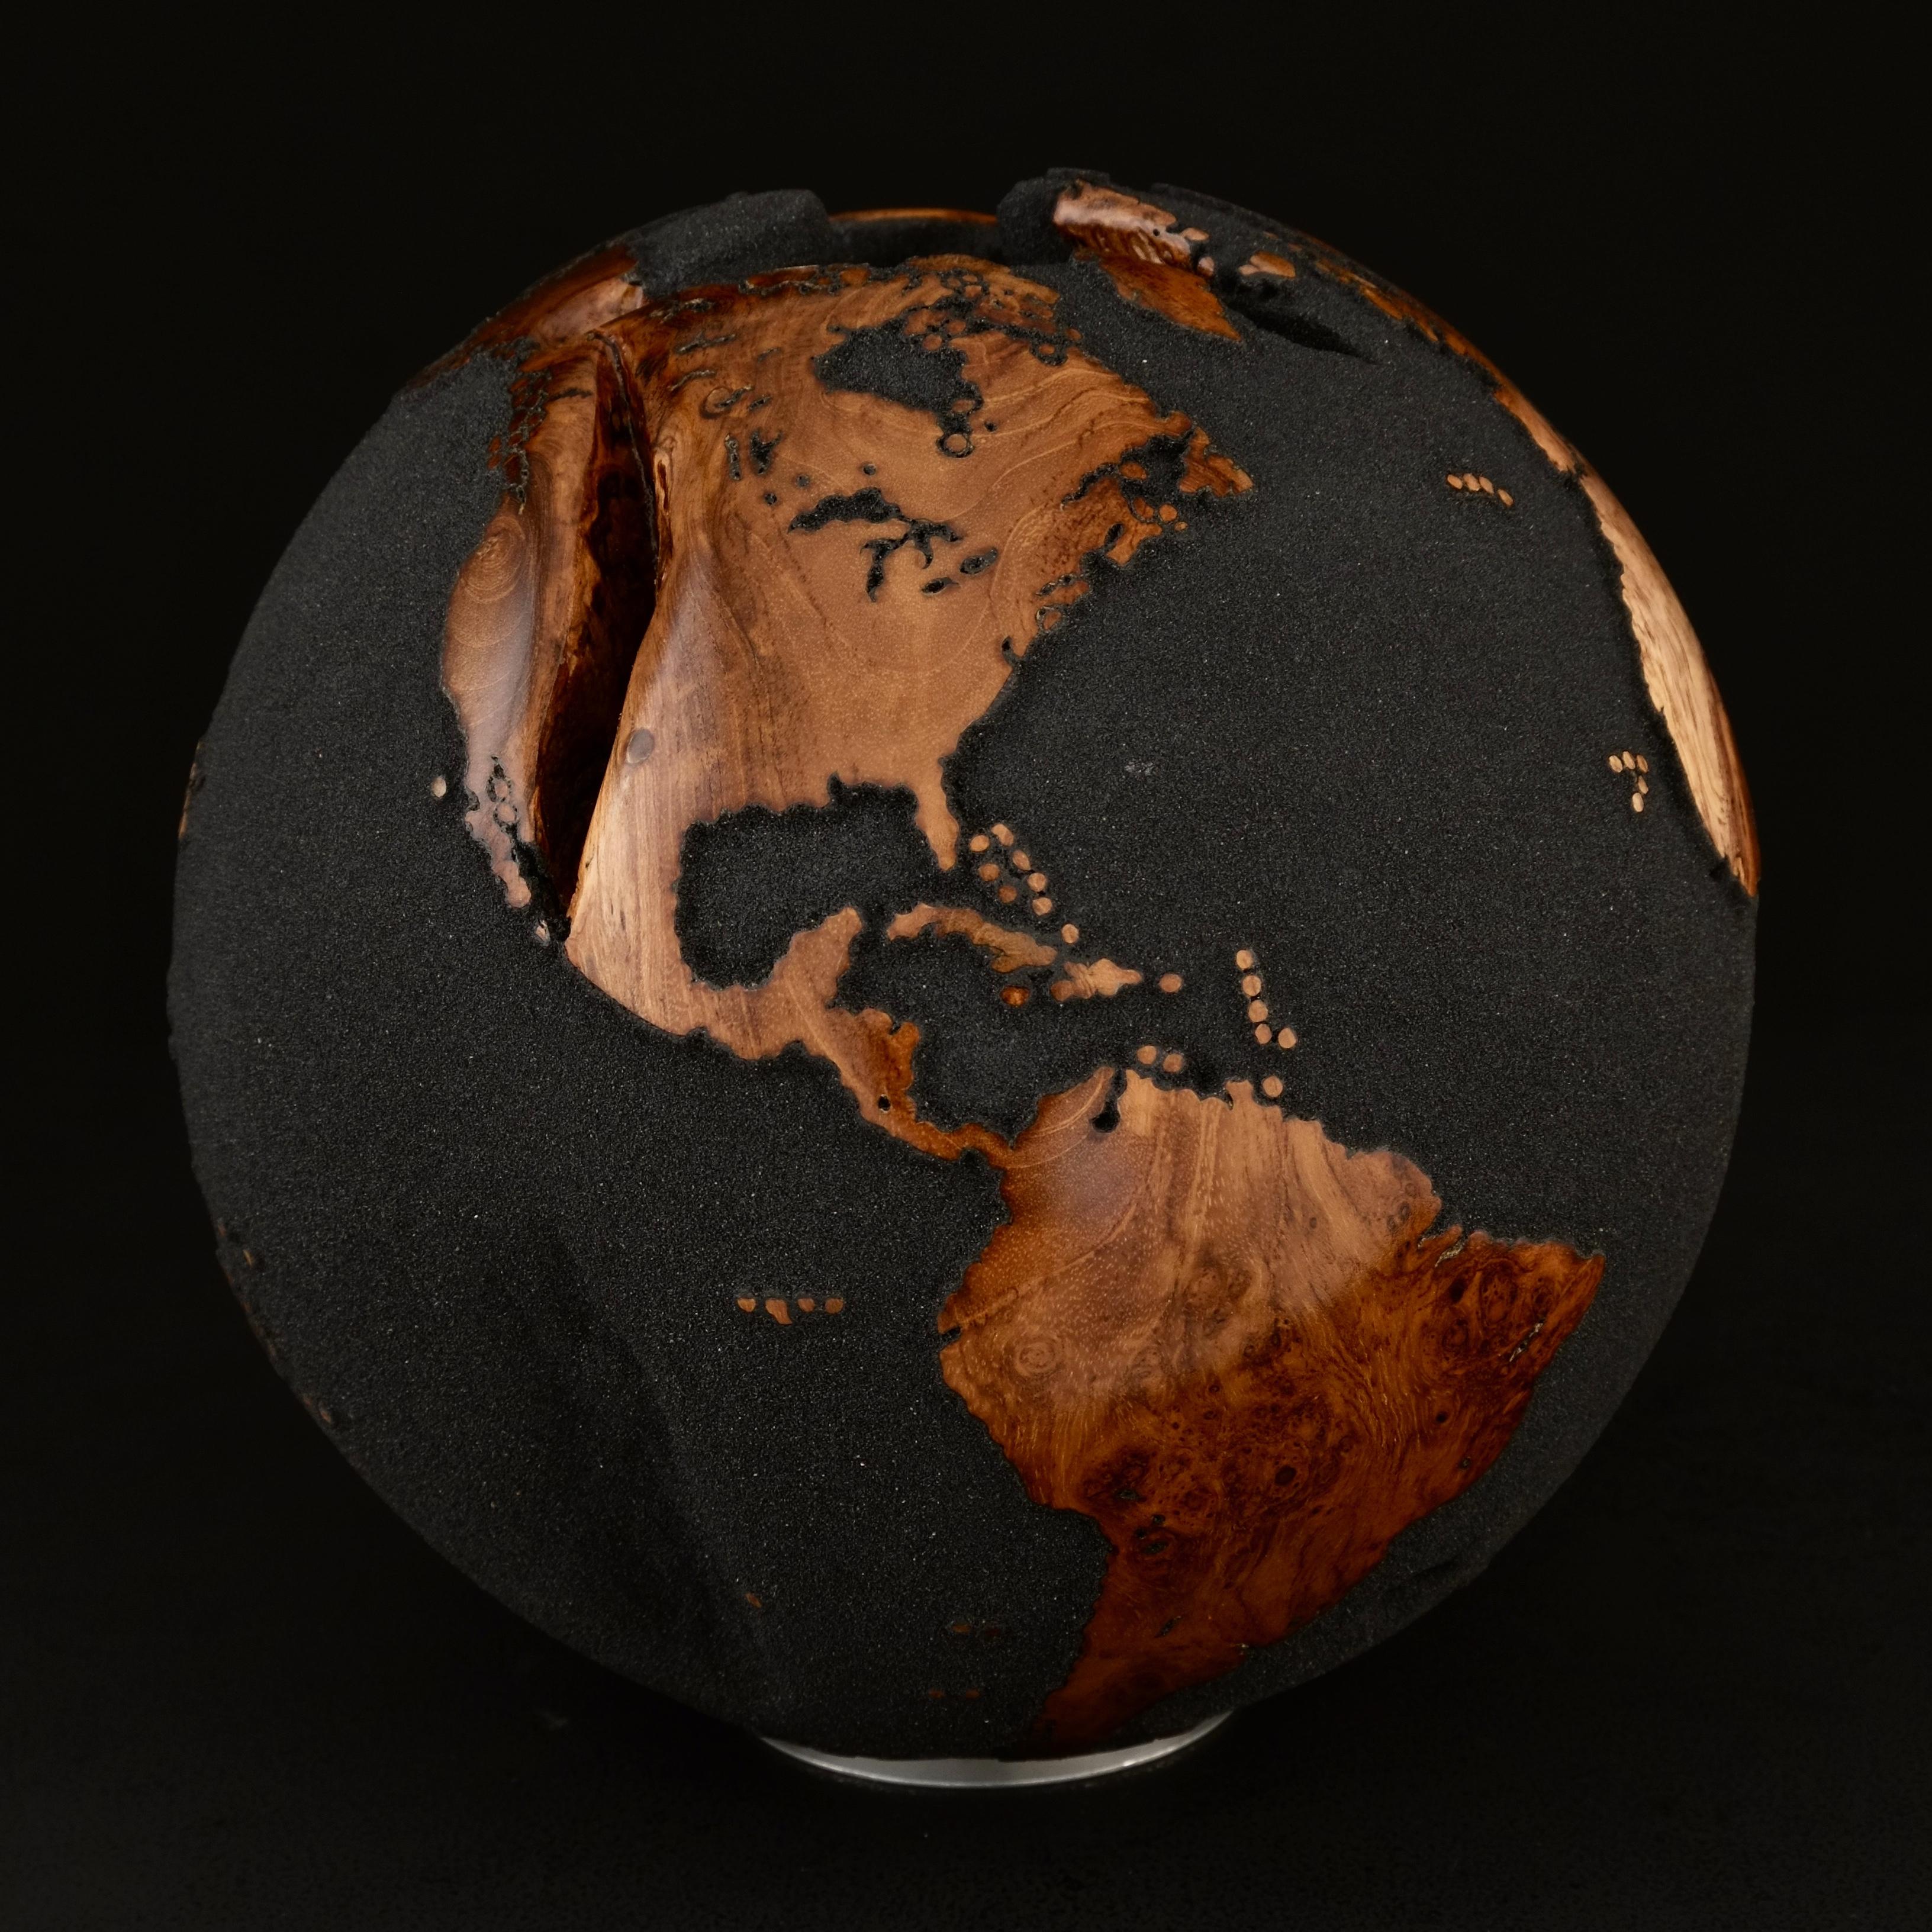 Teakholz und schwarzer Lavasand machen diesen schönen drehbaren Globus zu einer wirklich beeindruckenden Skulptur.
Die Form der Skulptur, die aus einem ganzen Stück Holz besteht, wird durch das Wachstum des Baumes bestimmt.
Auf einem drehbaren